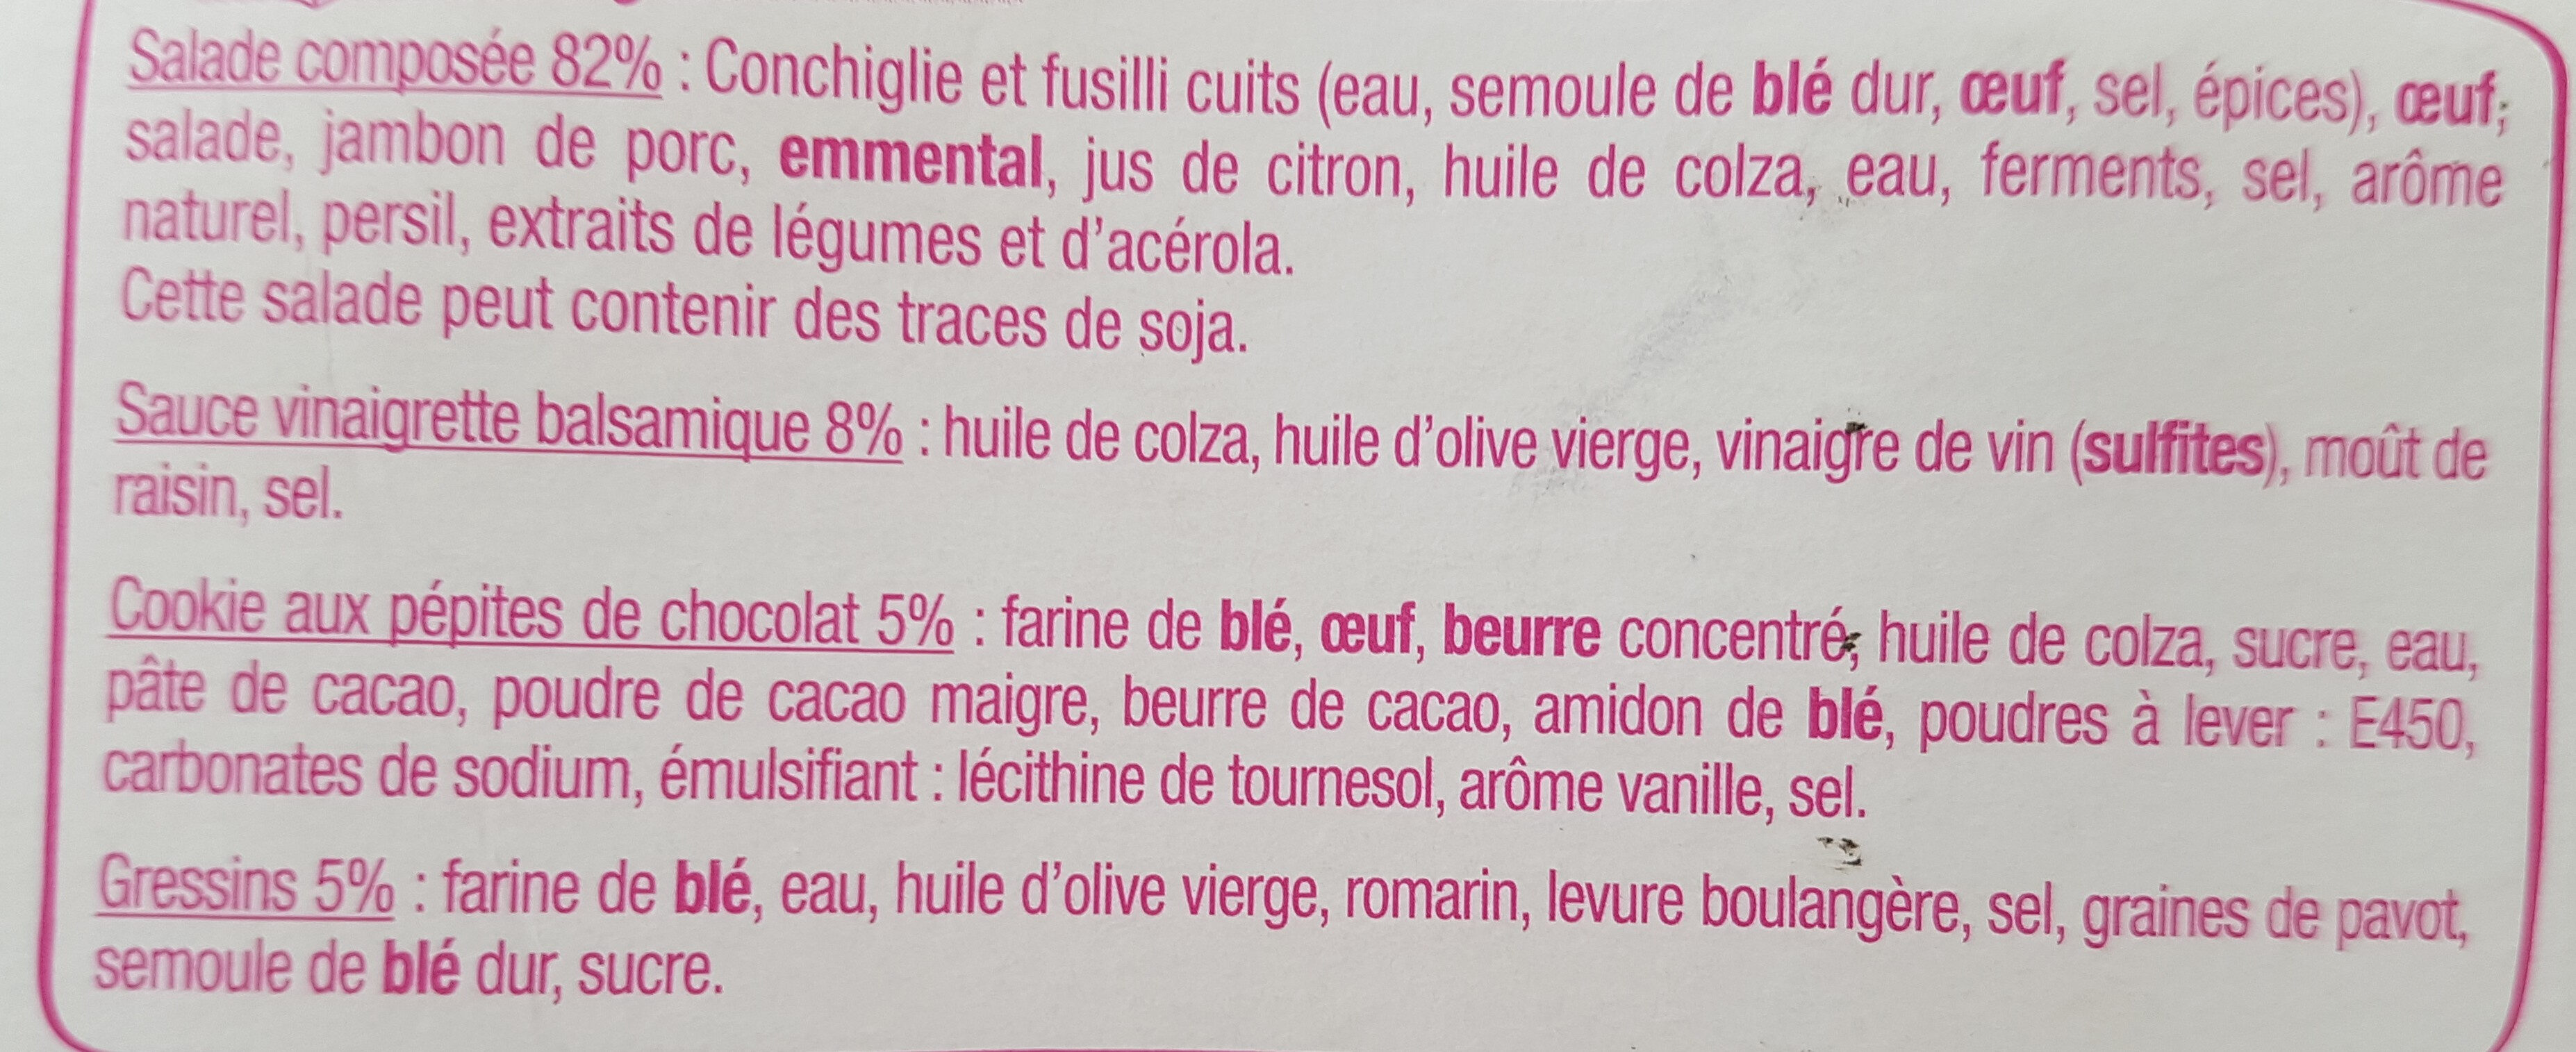 Salade & Compagnie - Montmartre - Ingredienser - fr